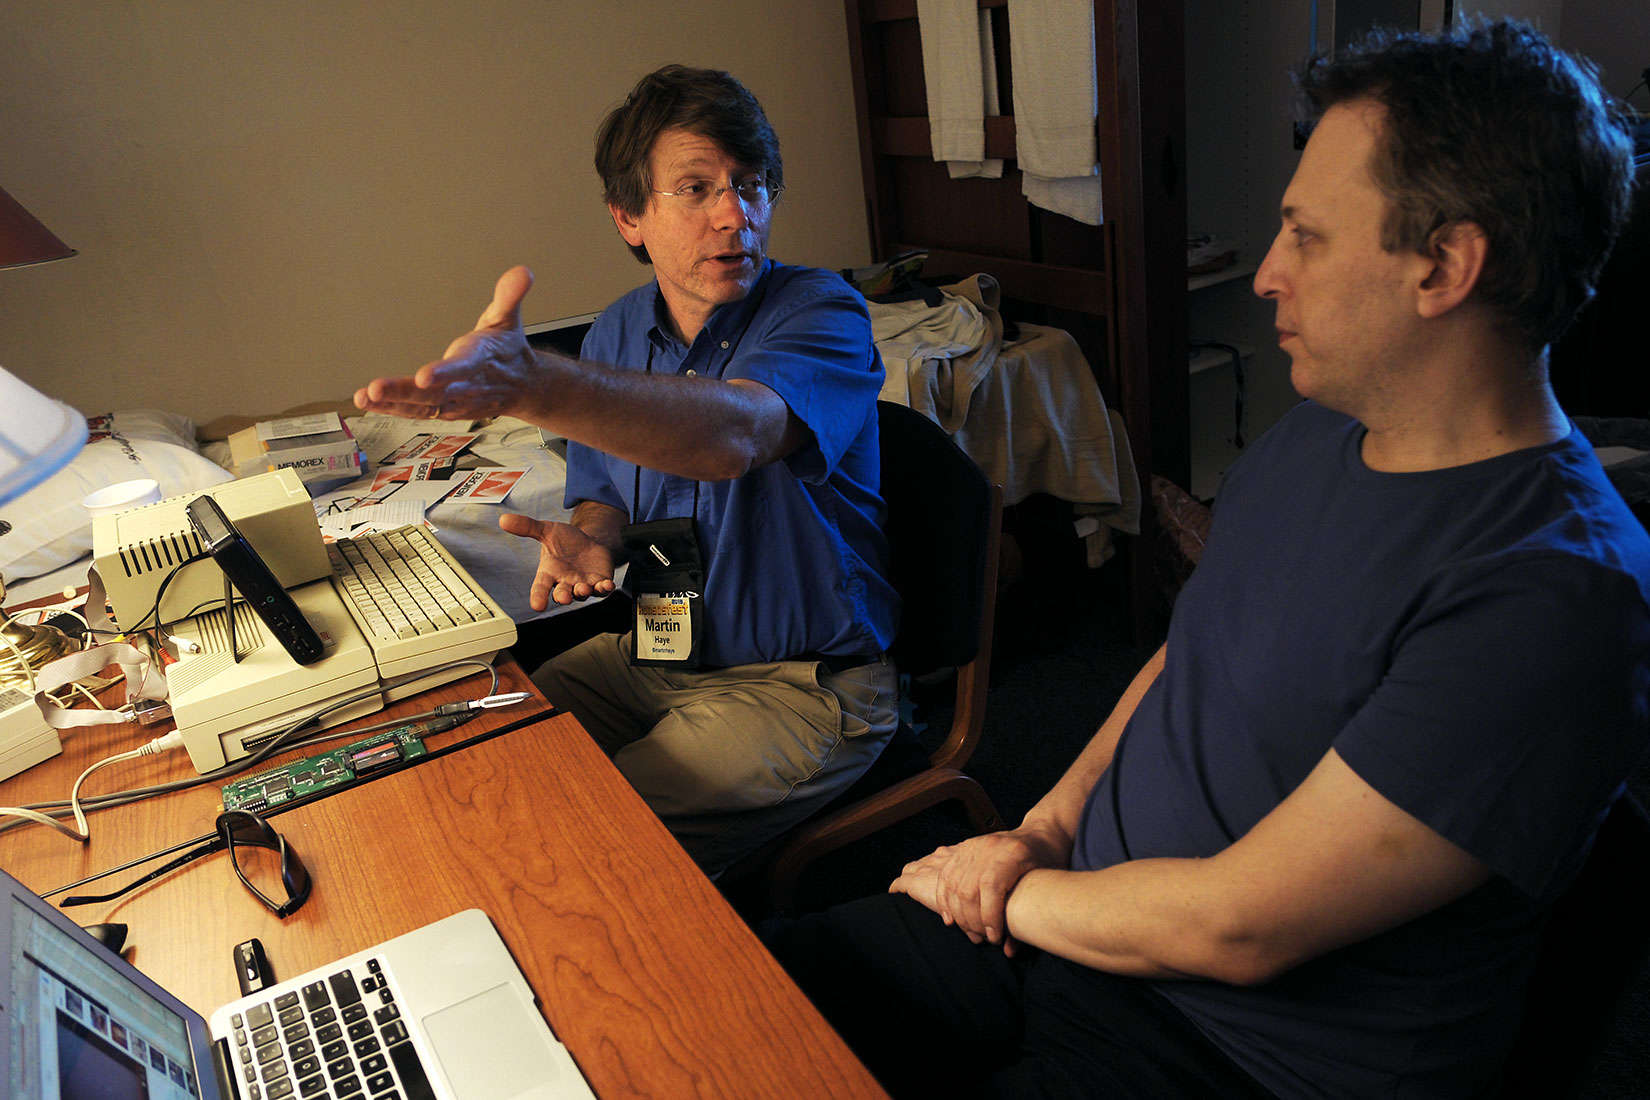 Martin Haye, left, and Ivan Drucker talking Apple II hacking at KansasFest.